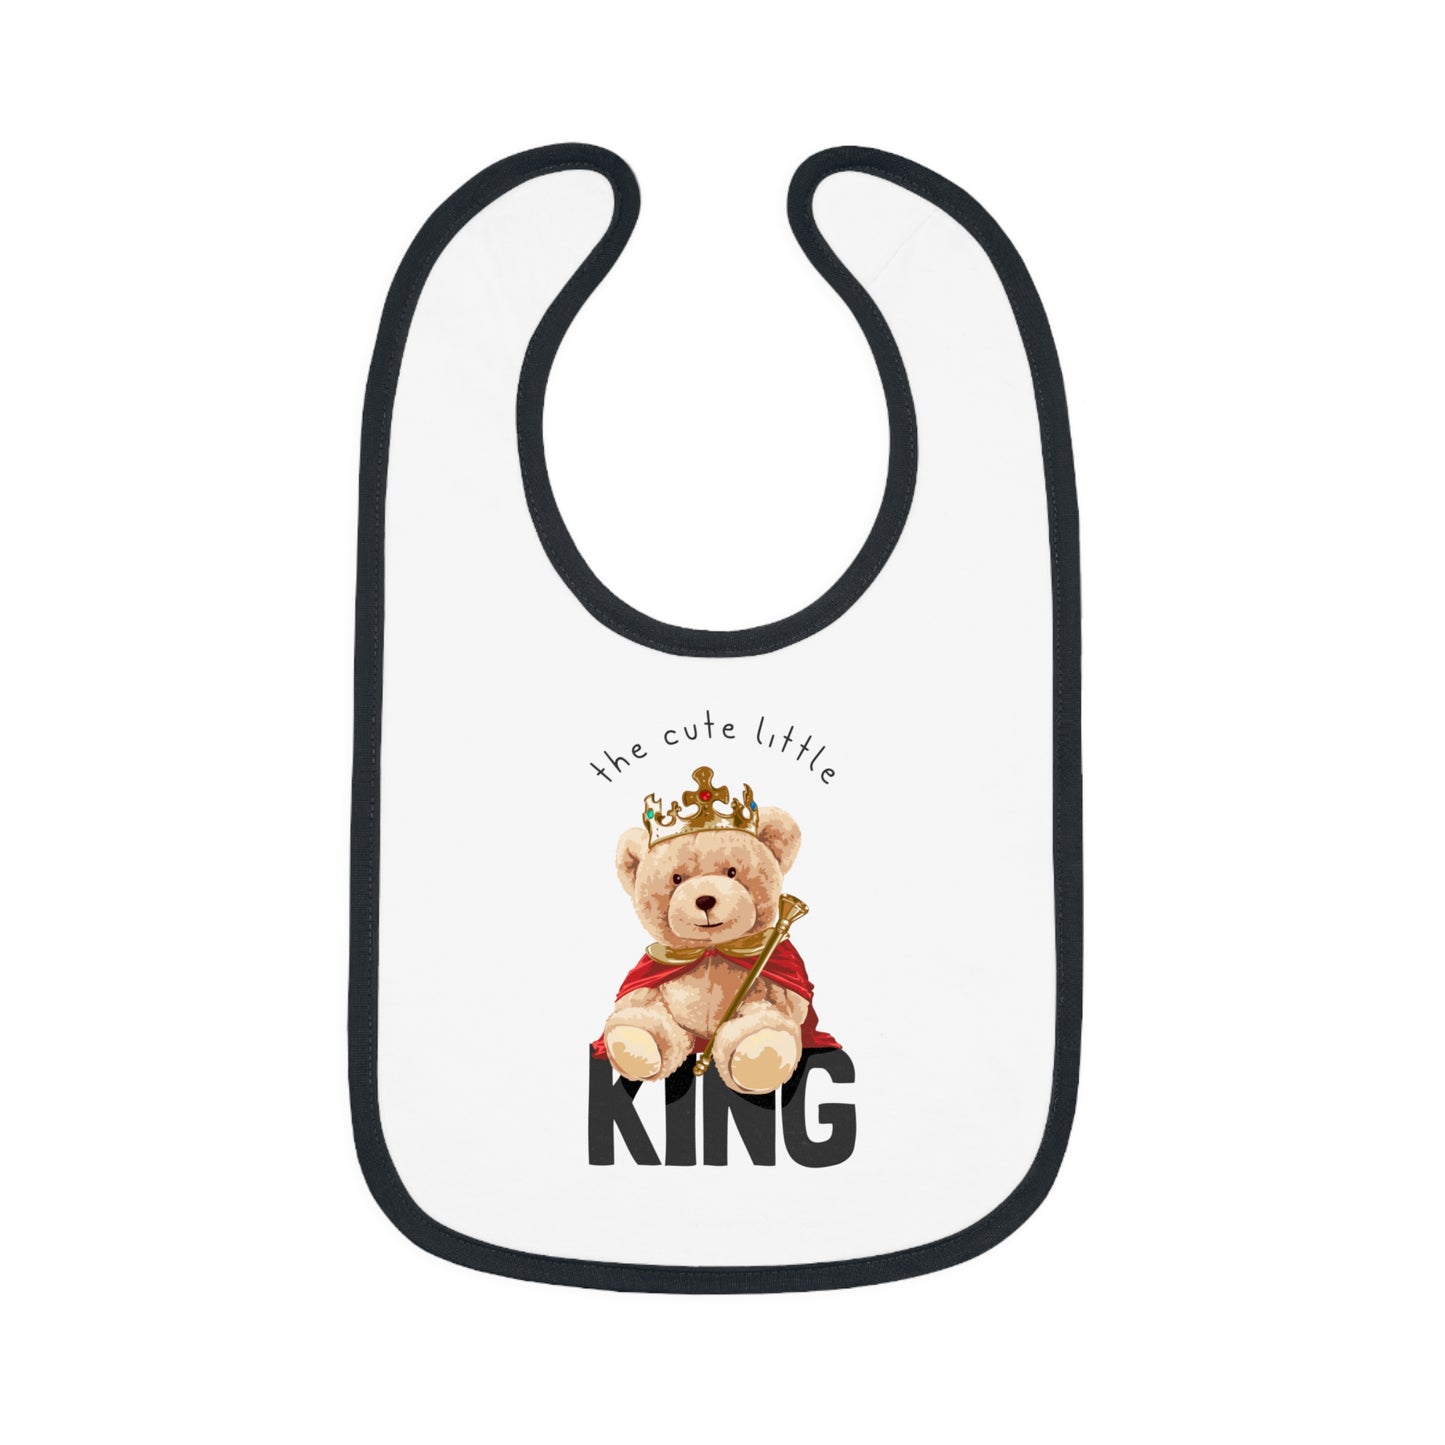 Cute Little King - Baby Contrast Trim Jersey Bib